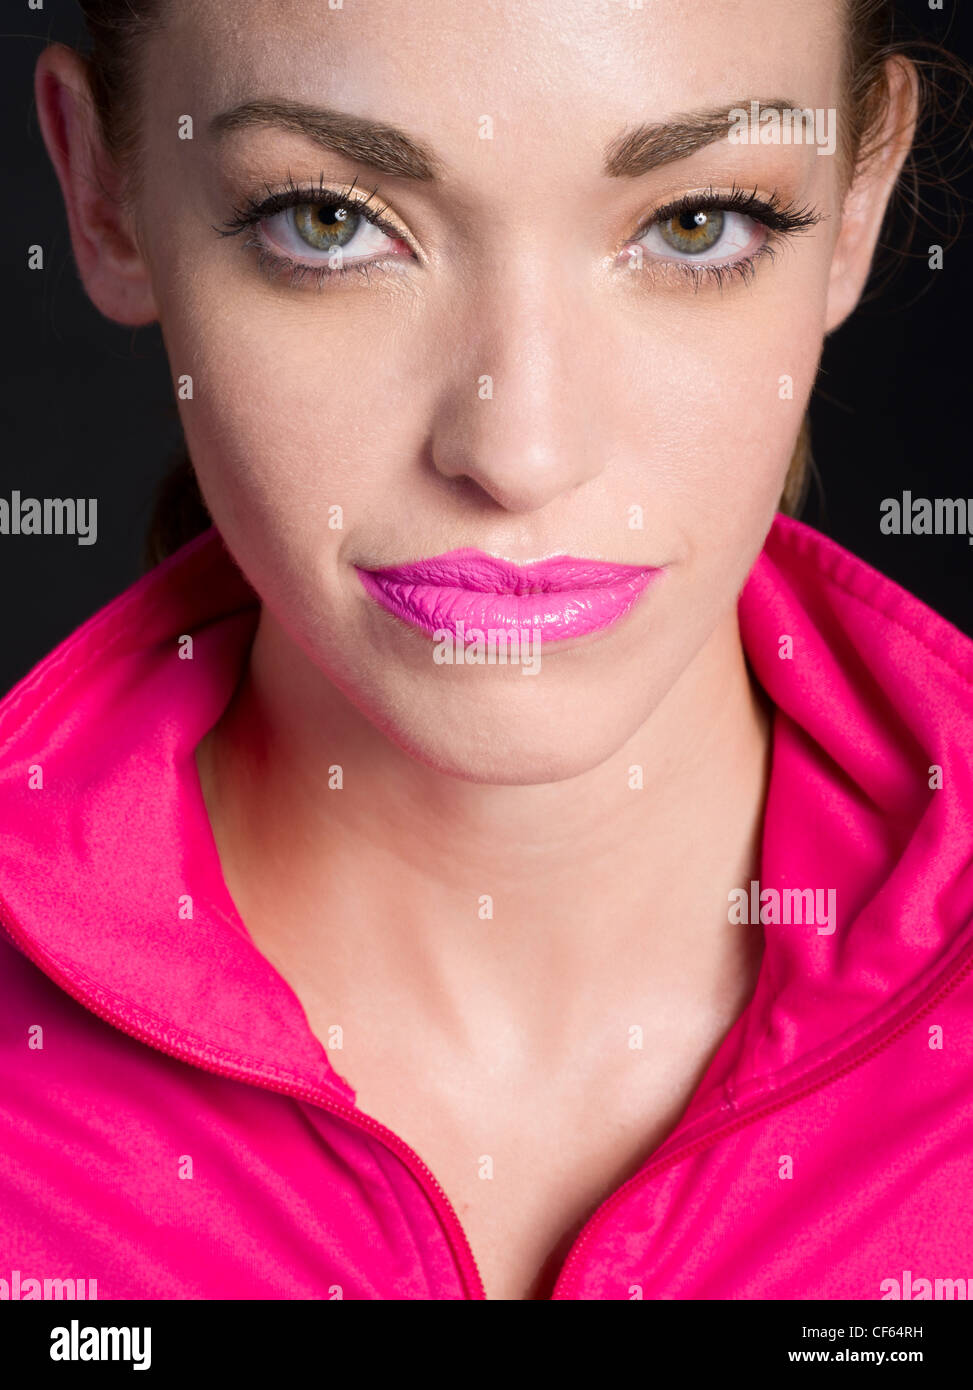 Beautiful woman wearing matching pink lipstick and jacket Stock Photo